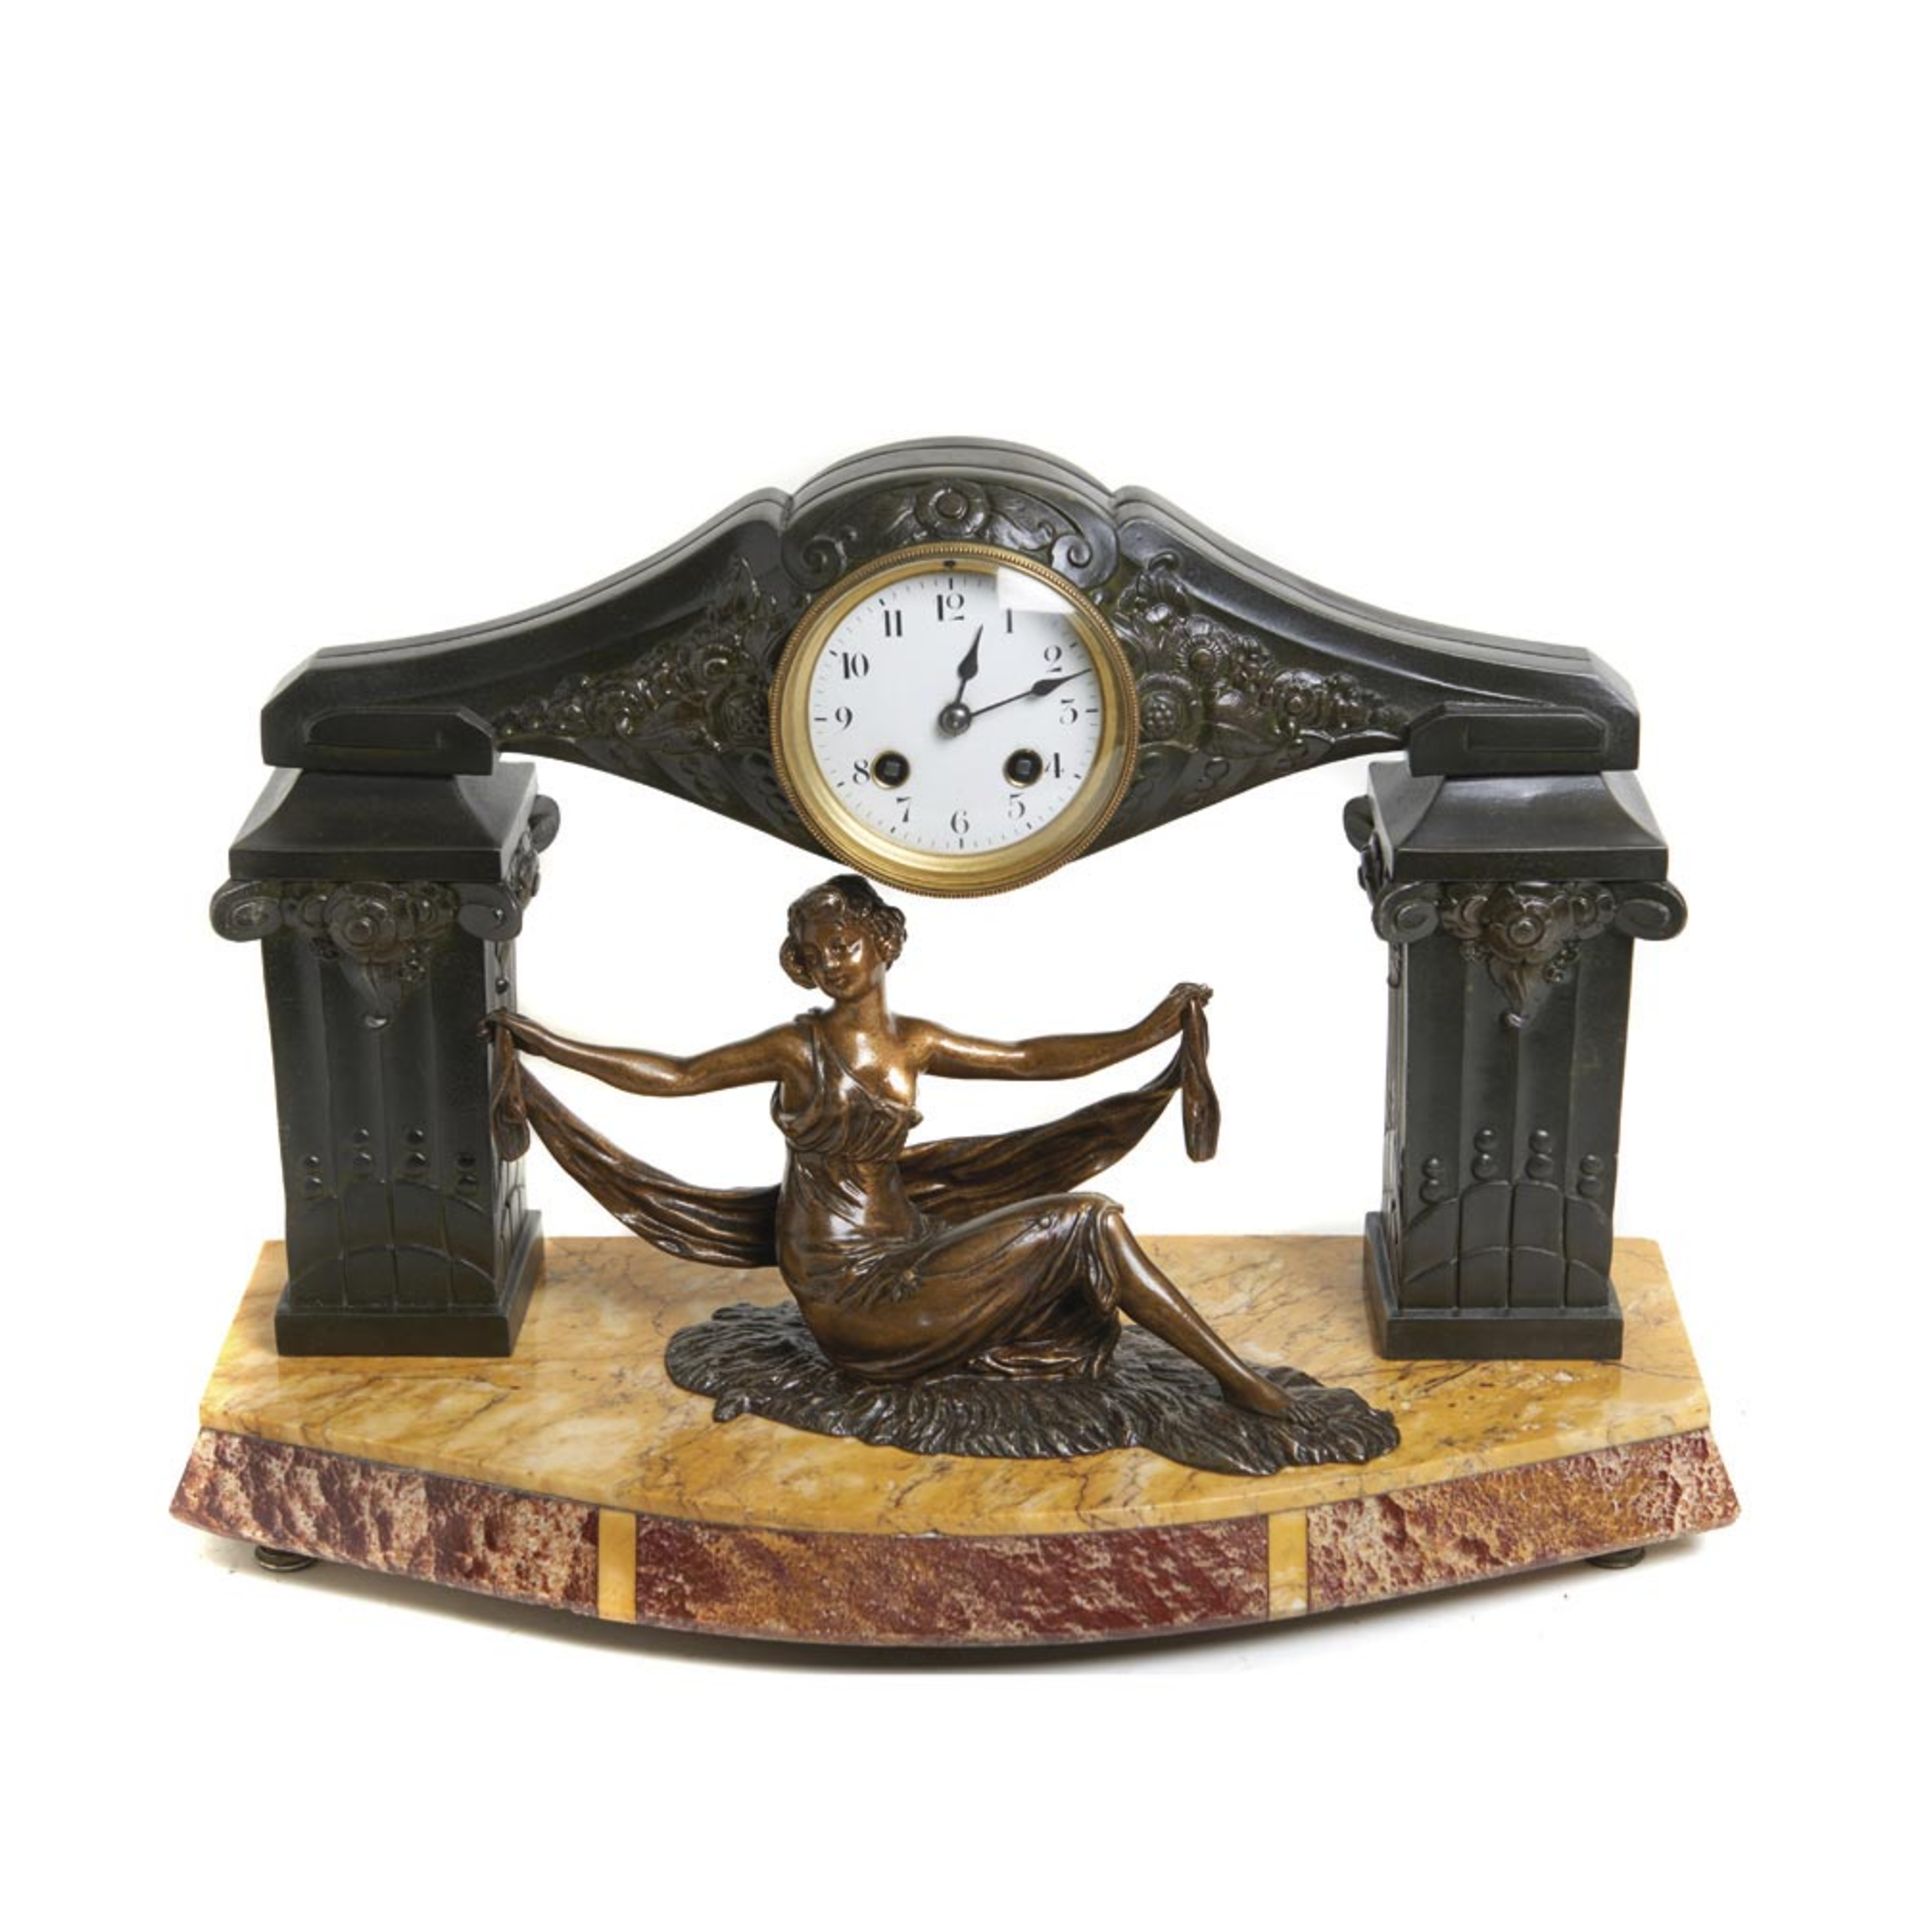 Patinated calamine and marble Art Deco table clock. Reloj de sobremesa Art Deco en calamina patinada